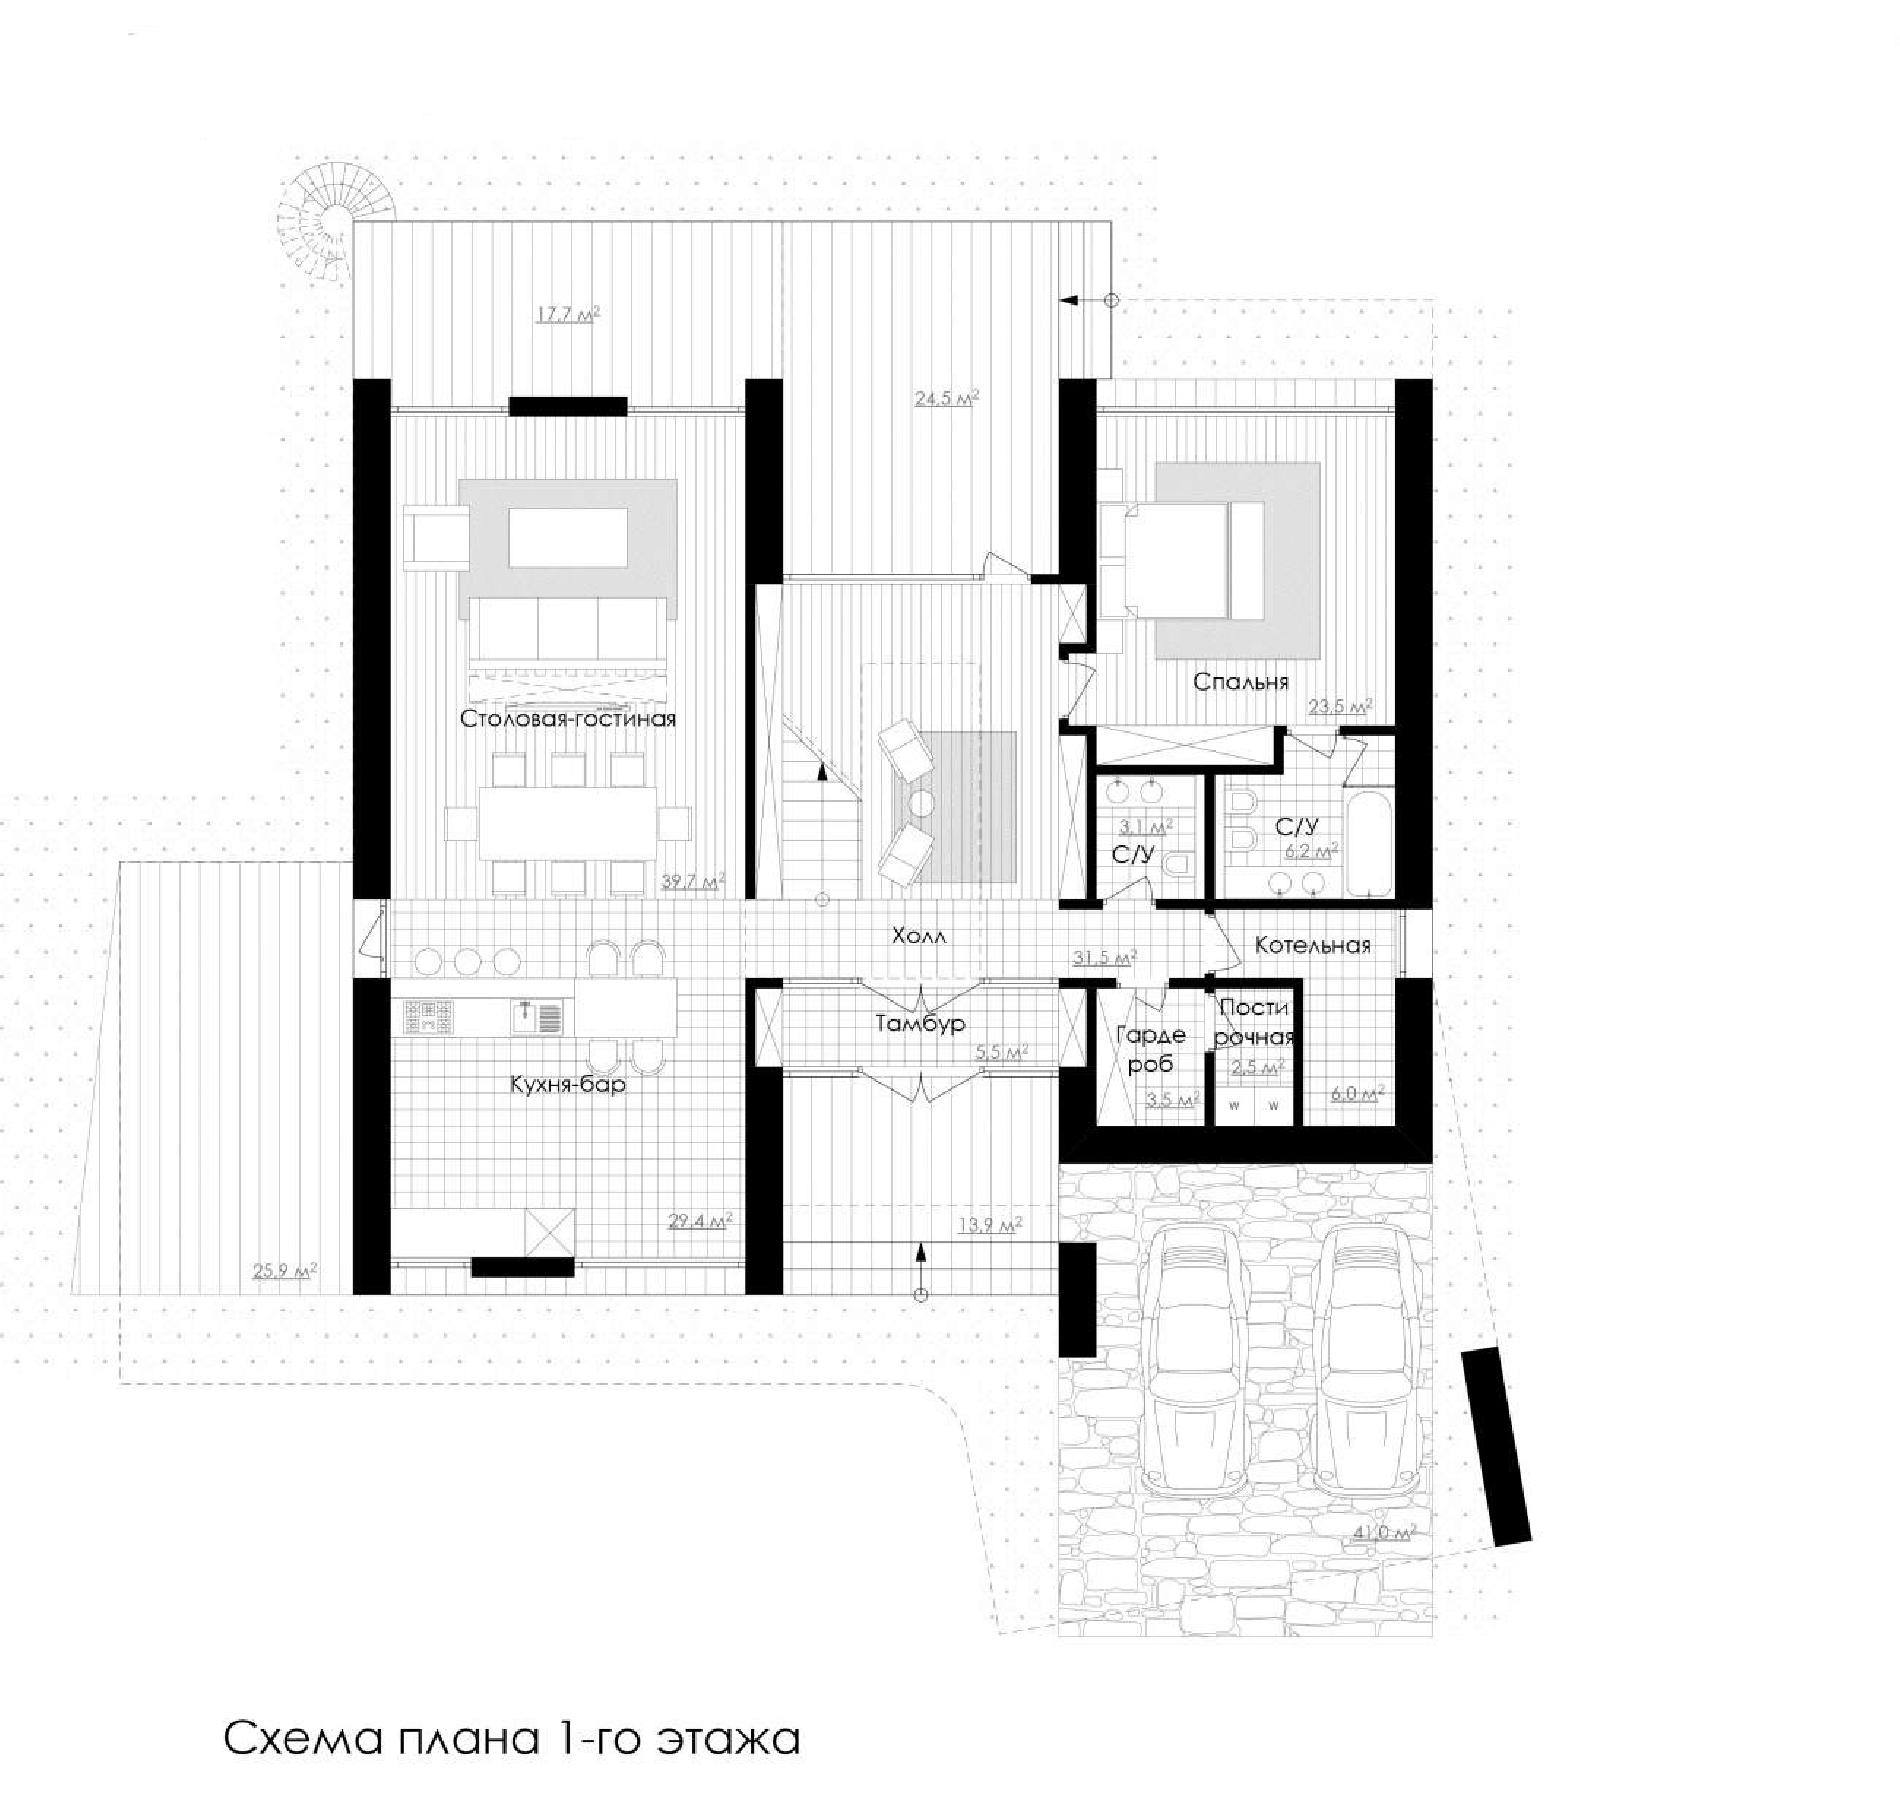 Планировка проекта дома №rh-450 rh-450 (1)p.jpg